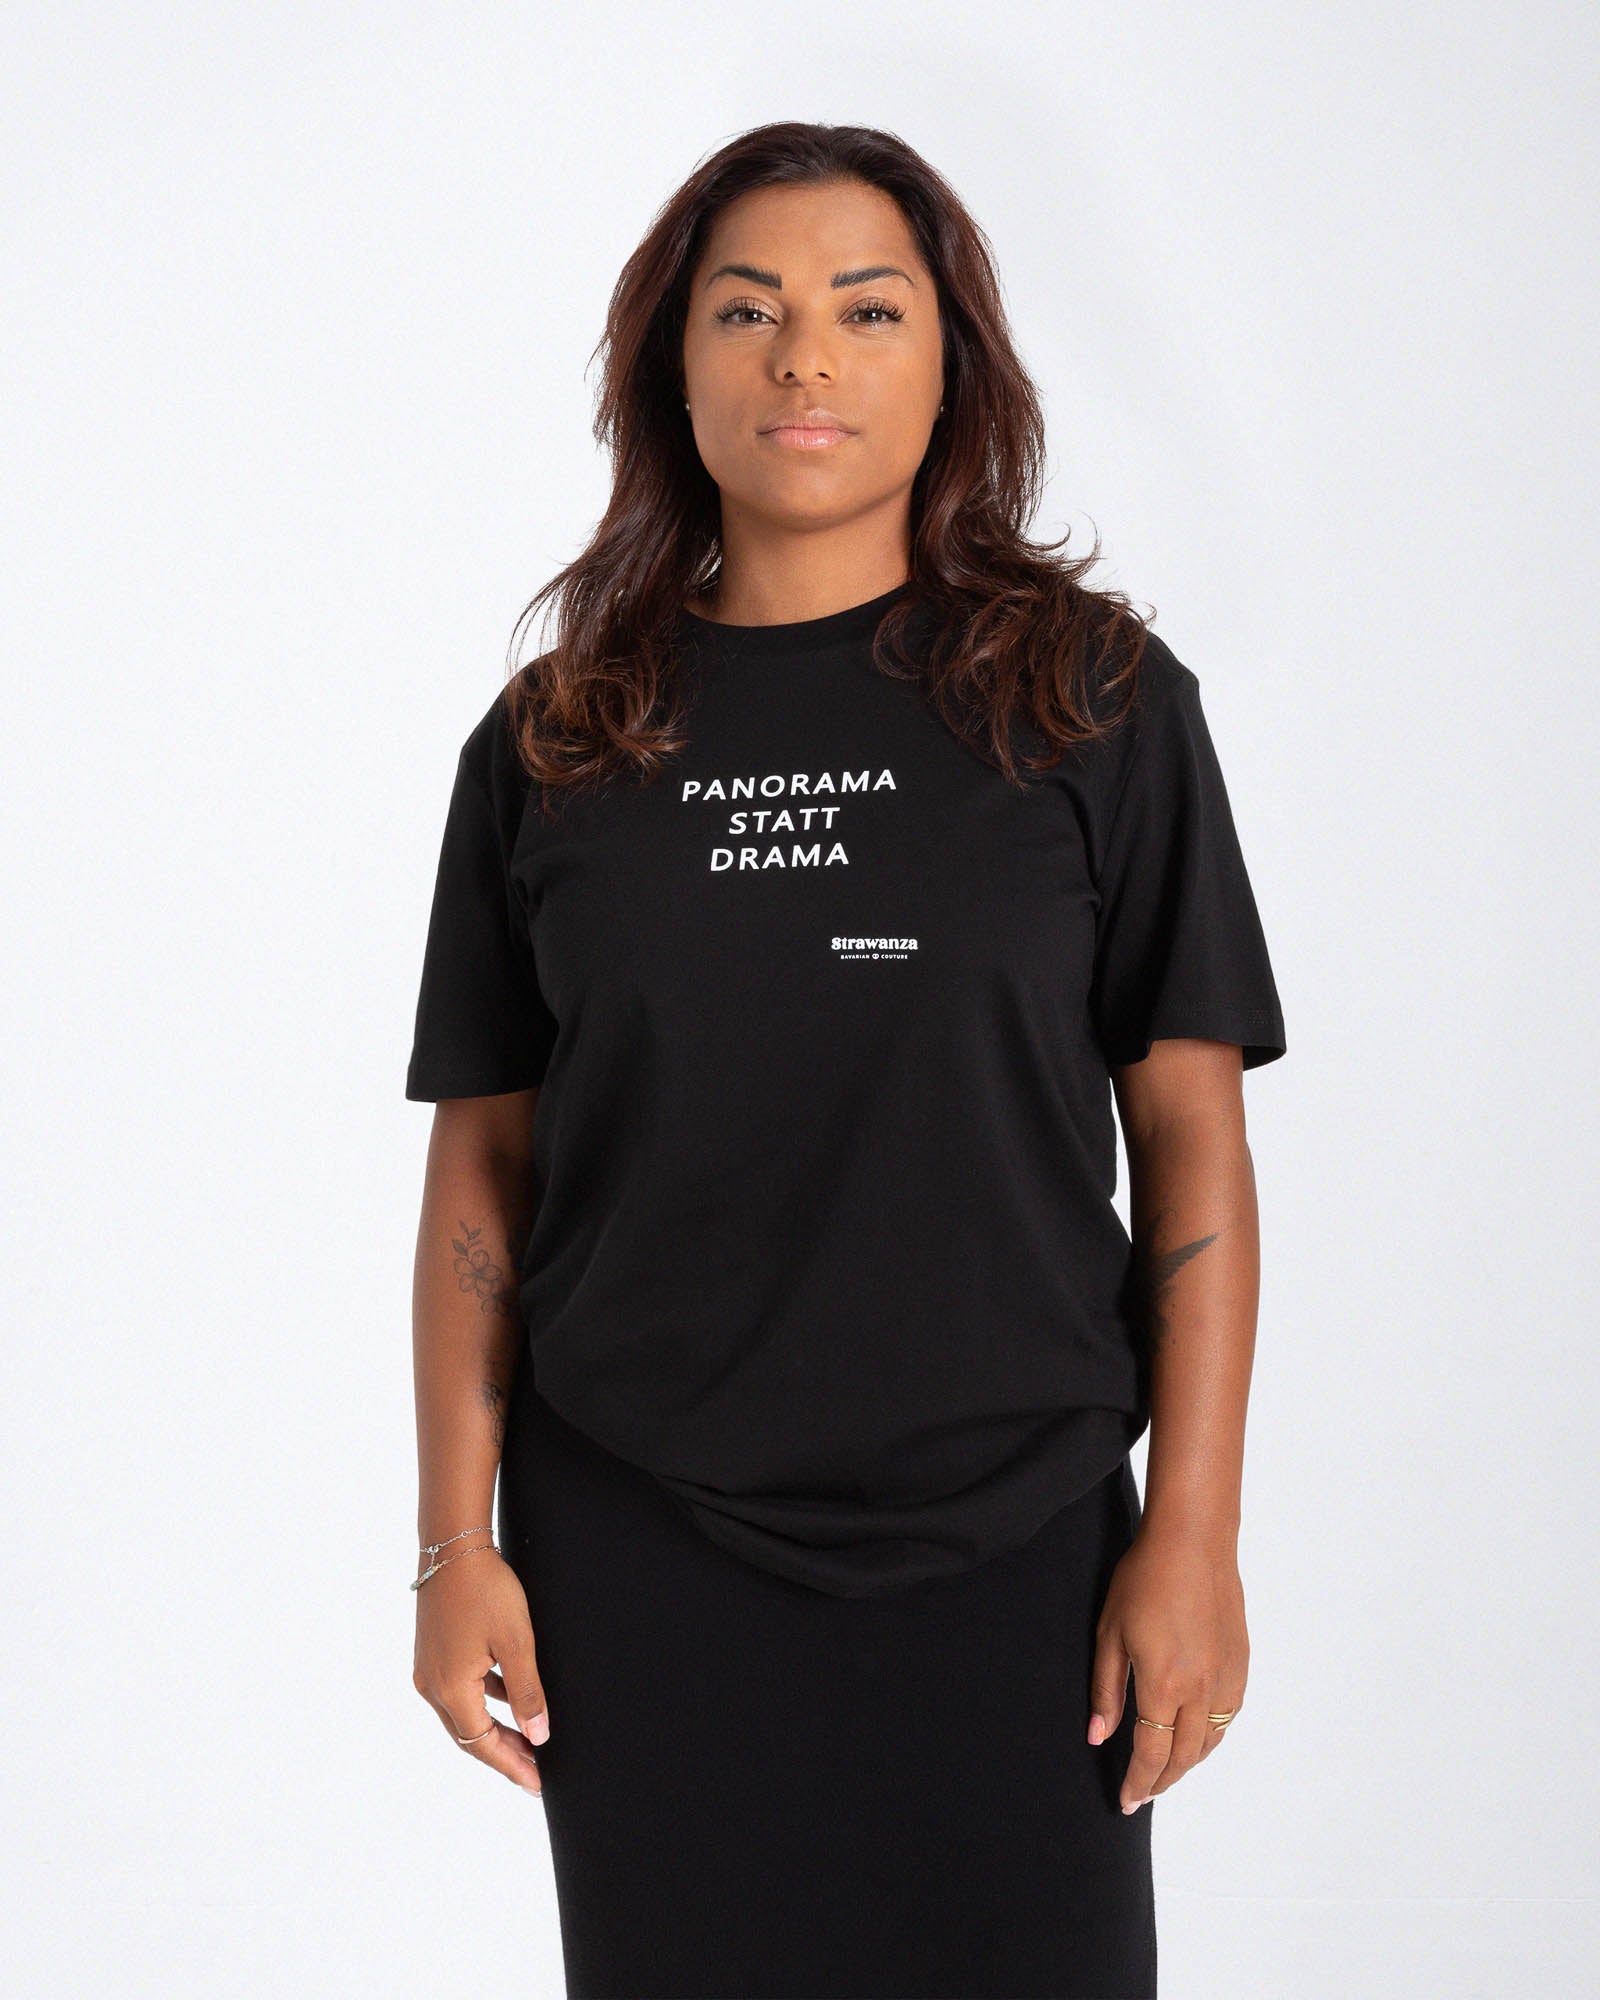 Eine Frau trägt ein schwarzes T-Shirt mit einer weißen Schrift in Höhe der Brust vor einem weißen Hintergrund. 